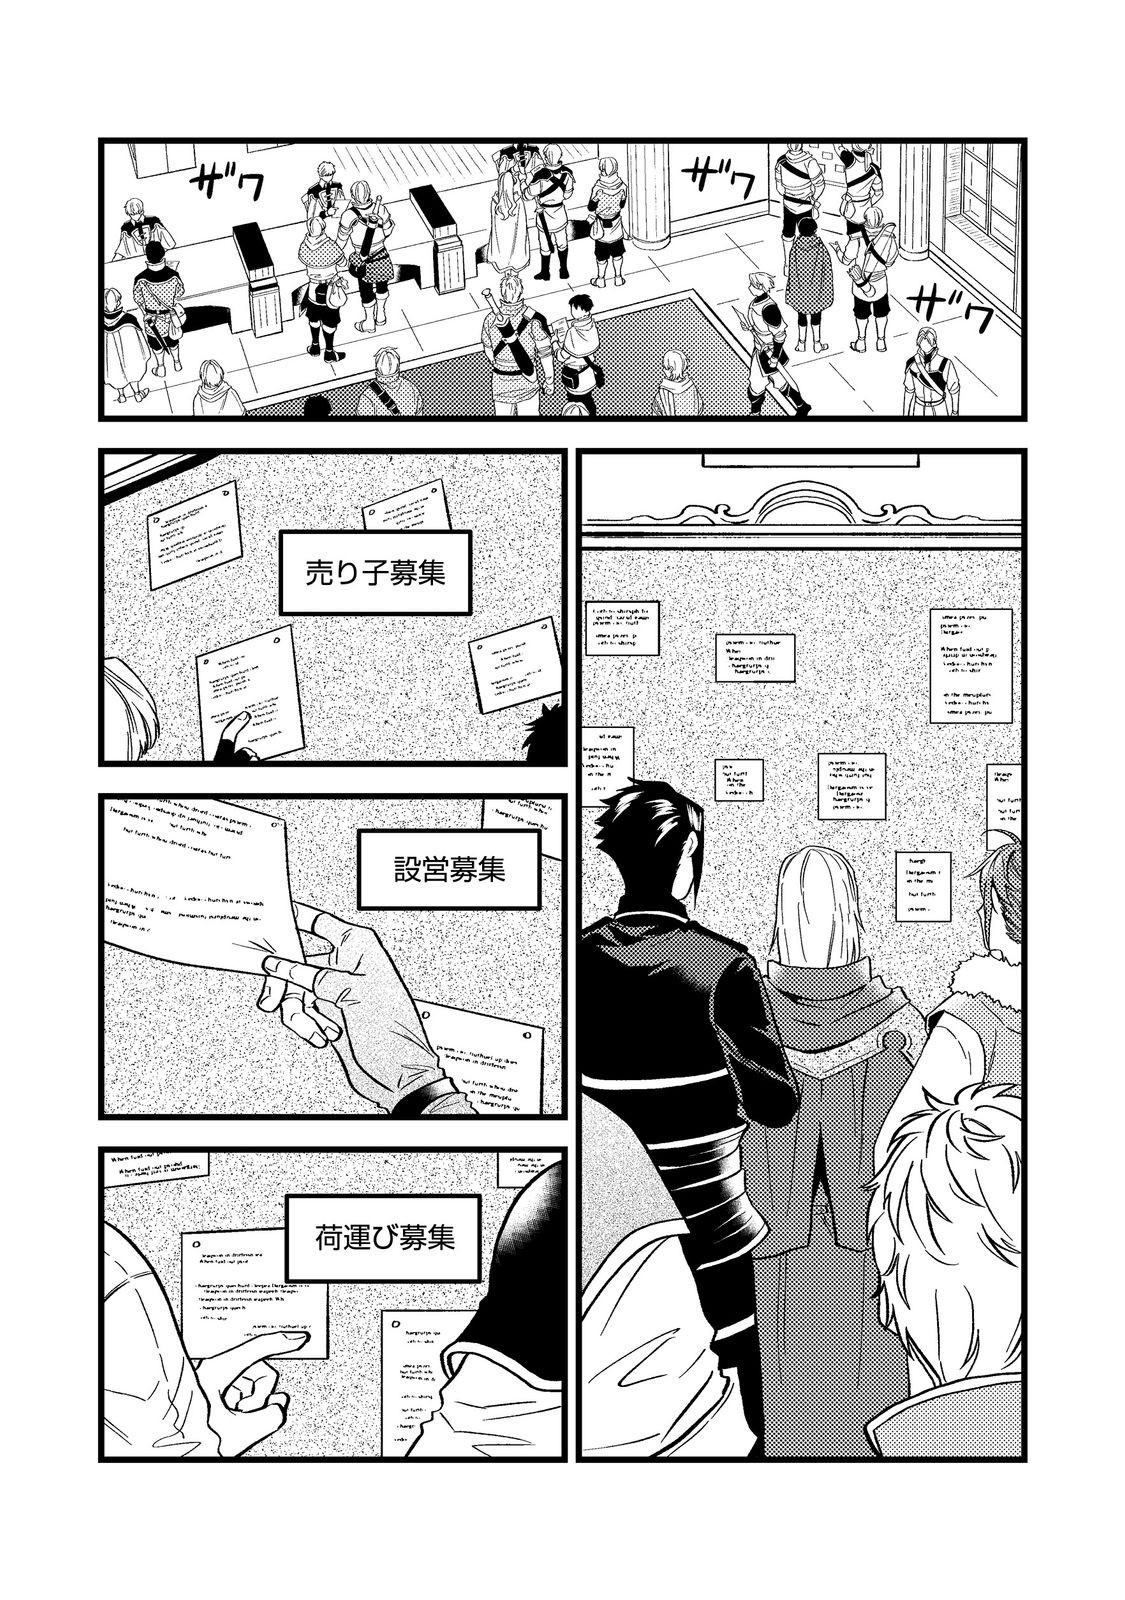 Odayaka Kizoku no Kyuuka no Susume - Chapter 44.1 - Page 1